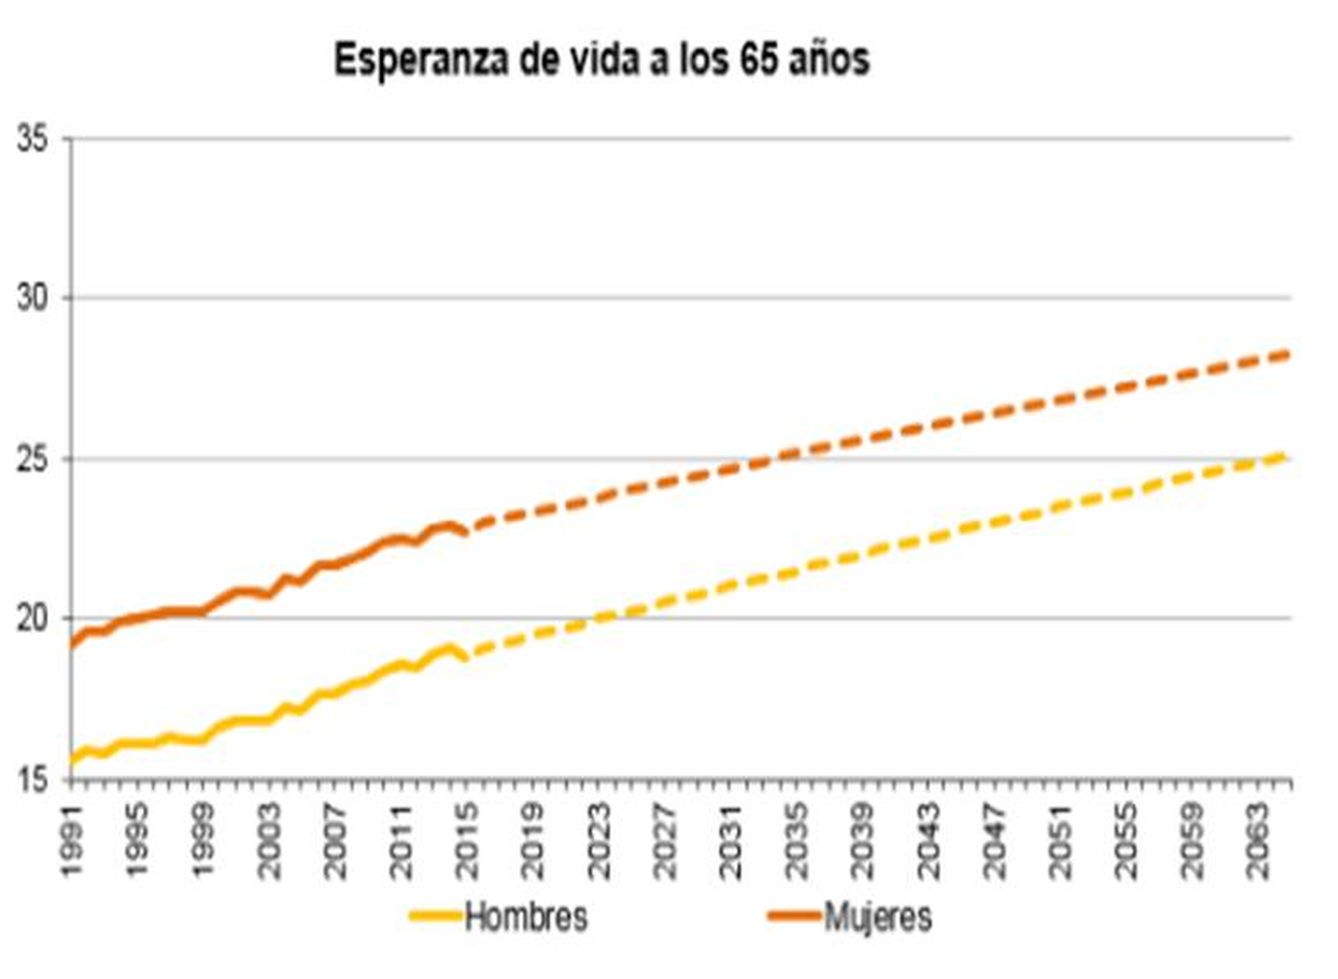 Esperanza de vida a los 65 años. Fuente: INE, proyecciones de población 2016-2066 (20.10.2016).